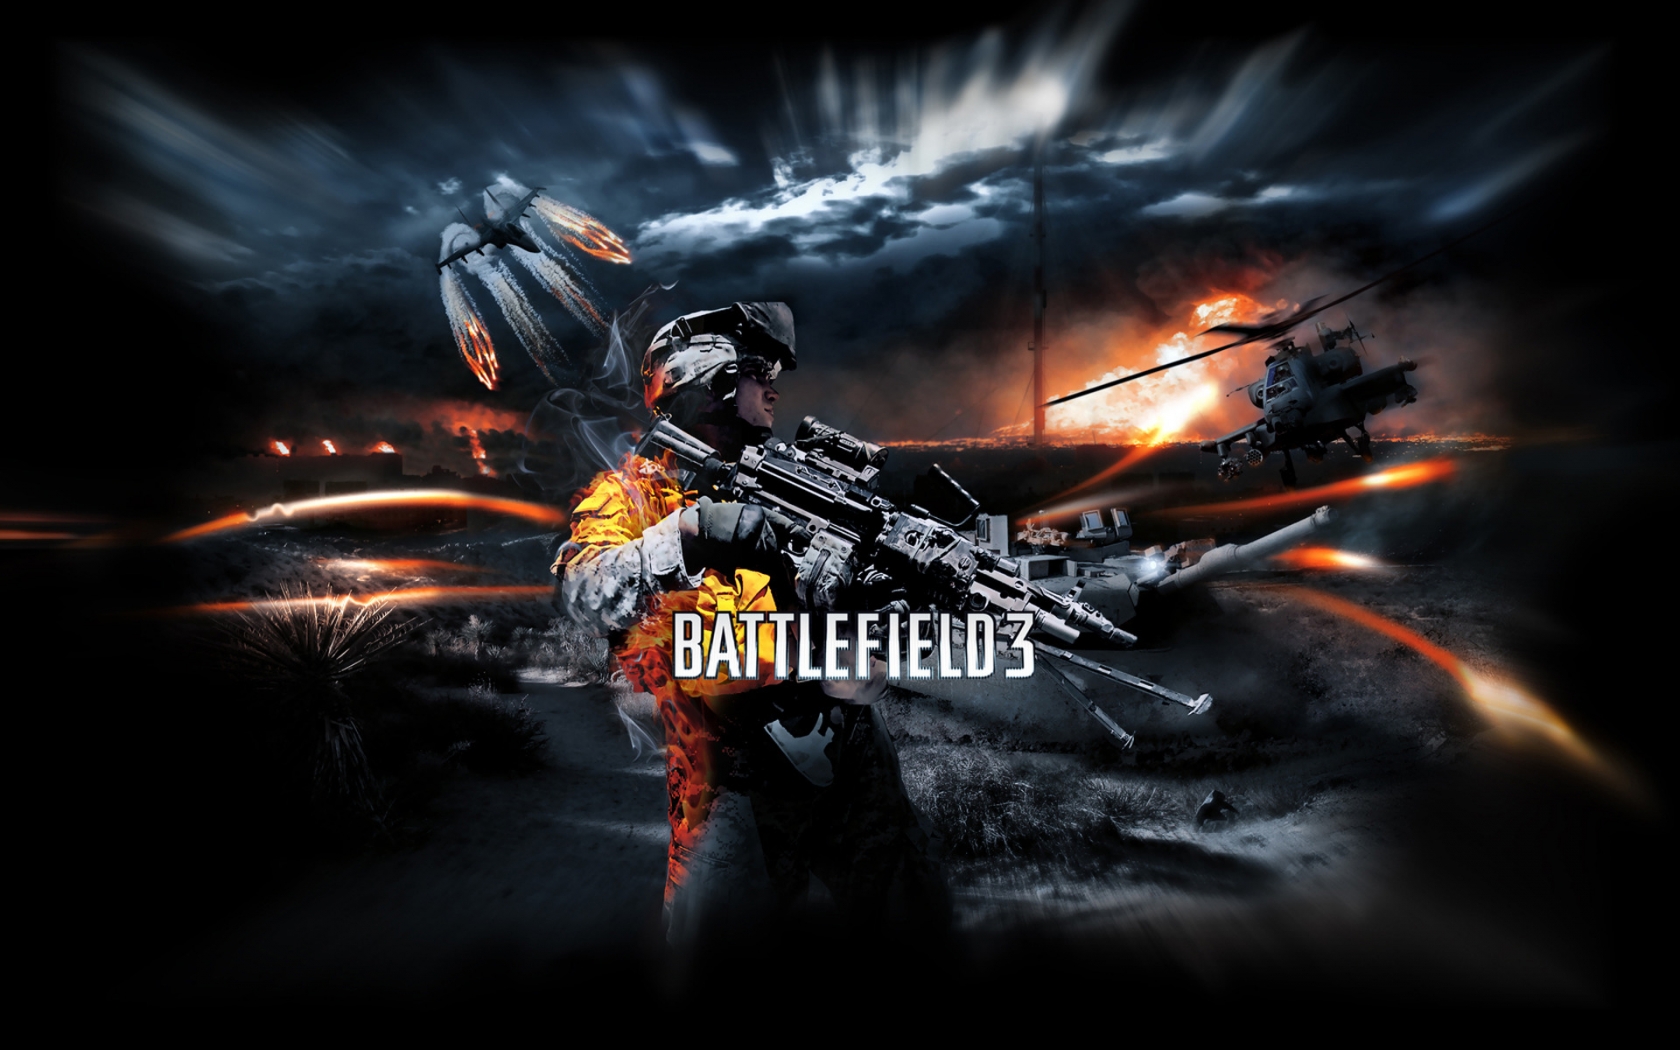 Battlefield 3 Poster for 1680 x 1050 widescreen resolution